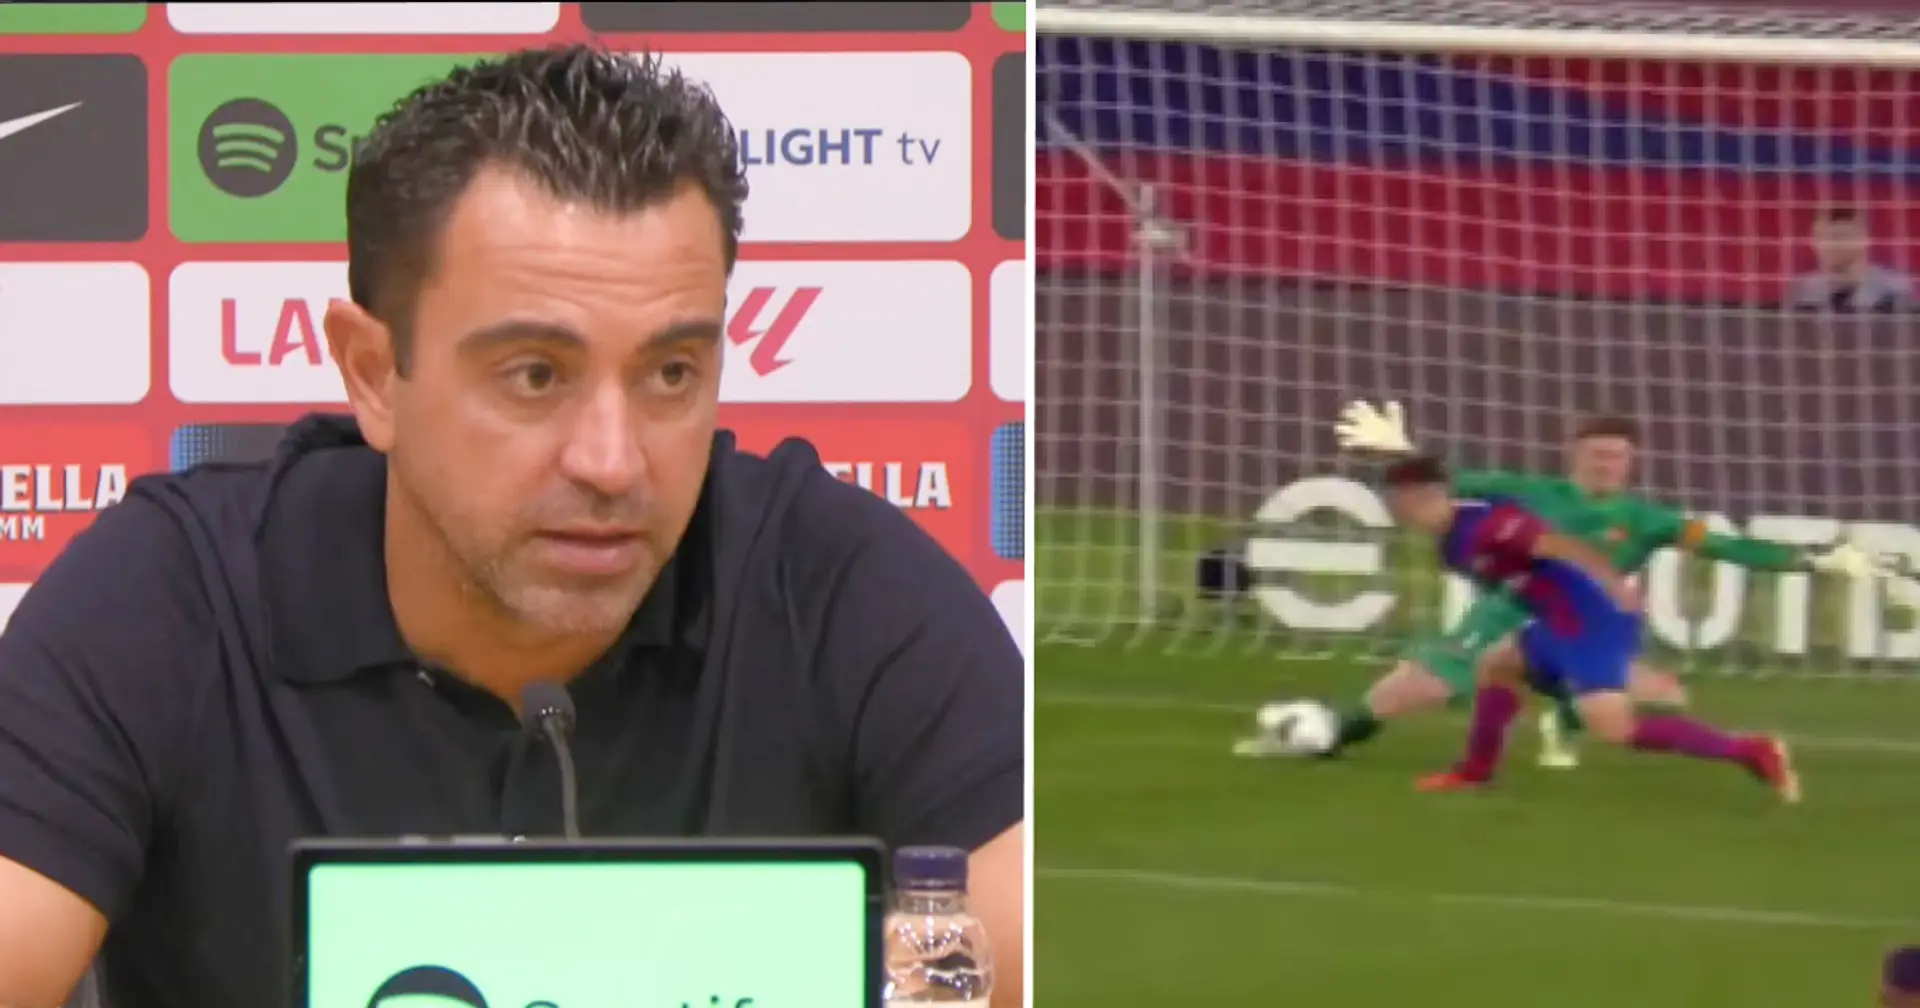 Xavi elogia a un jugador del Barça como 'irreemplazable' tras la victoria vs Sevilla, critica a la prensa por subestimarlo